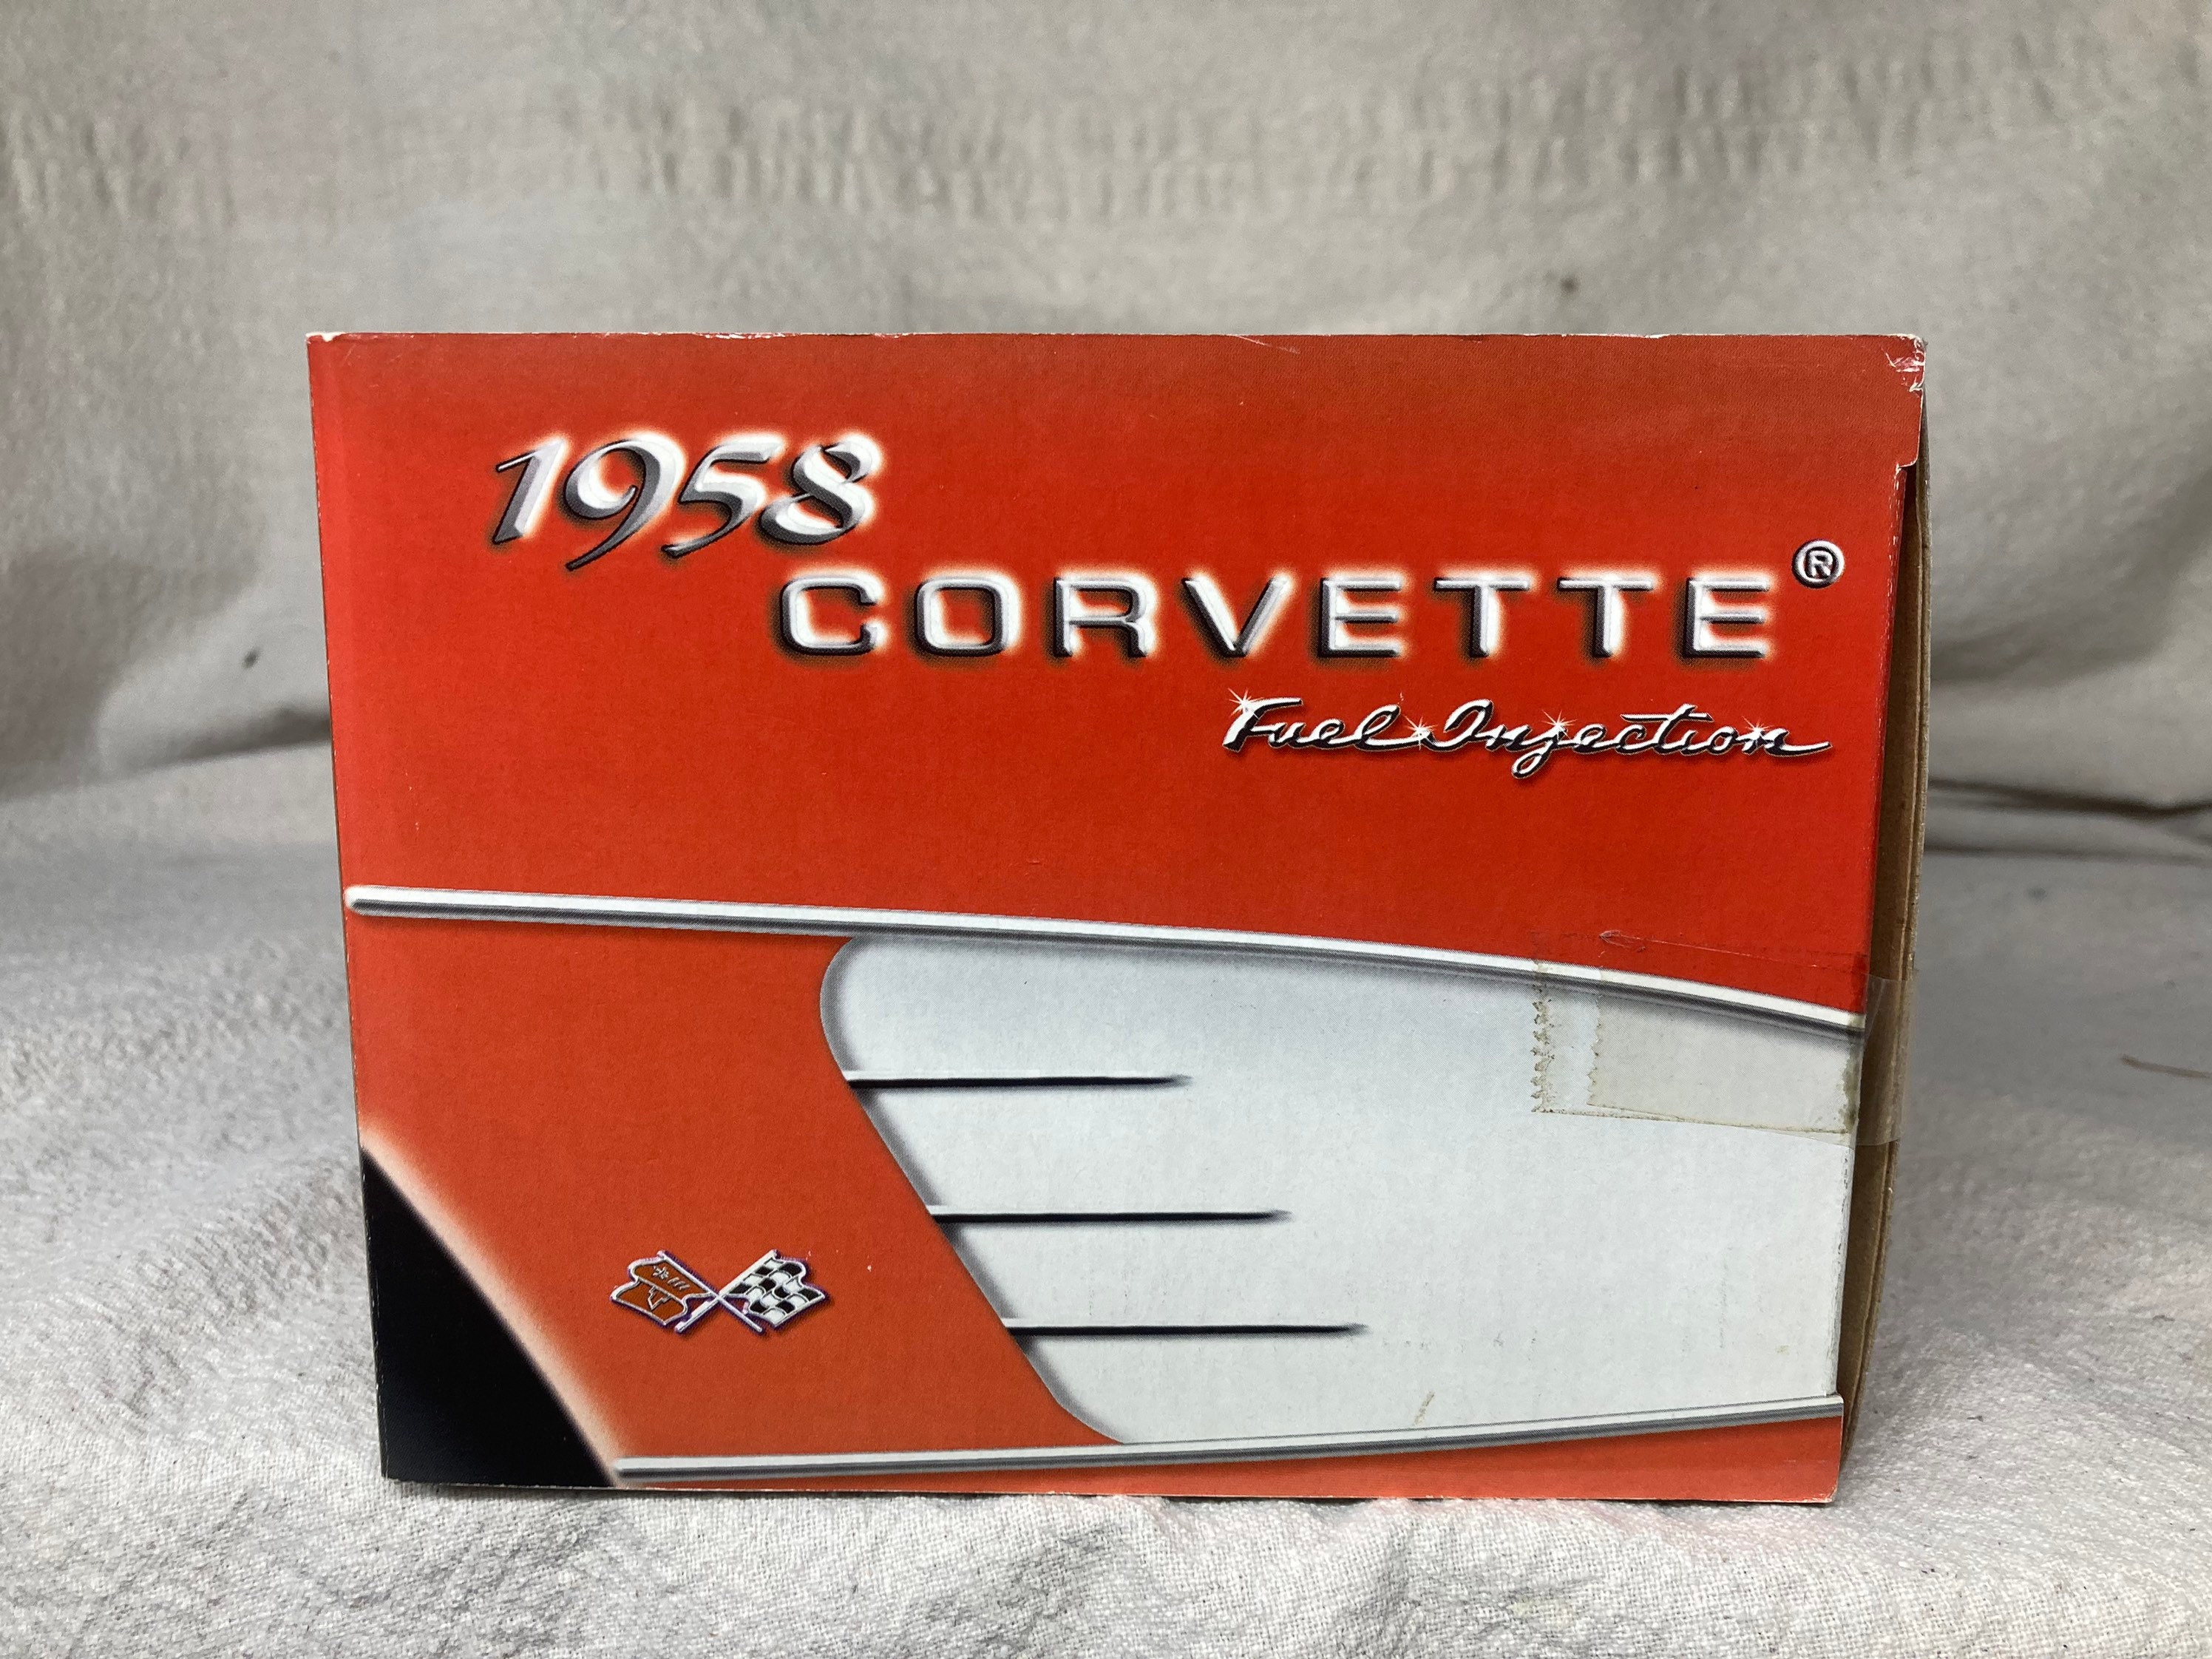 Carro de colección Escala 1:18 1958 Corvette